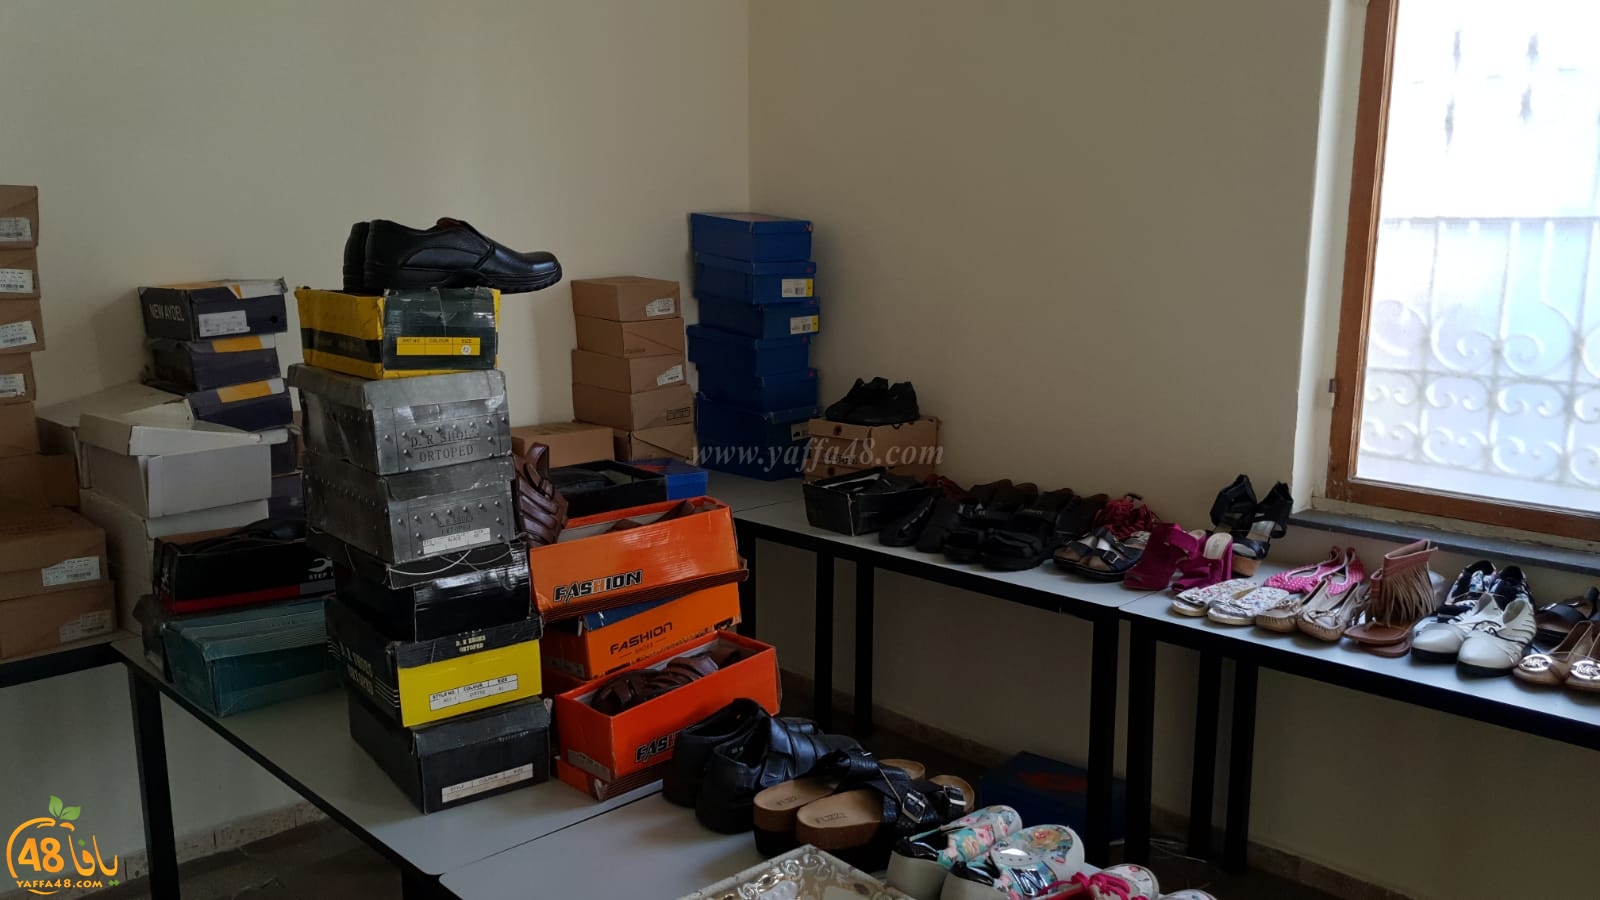 جمعية يافا تُنظم بازاراً خيرياً للأحذية في مكتبها وتدعو العائلات للحضور غداً الجمعة